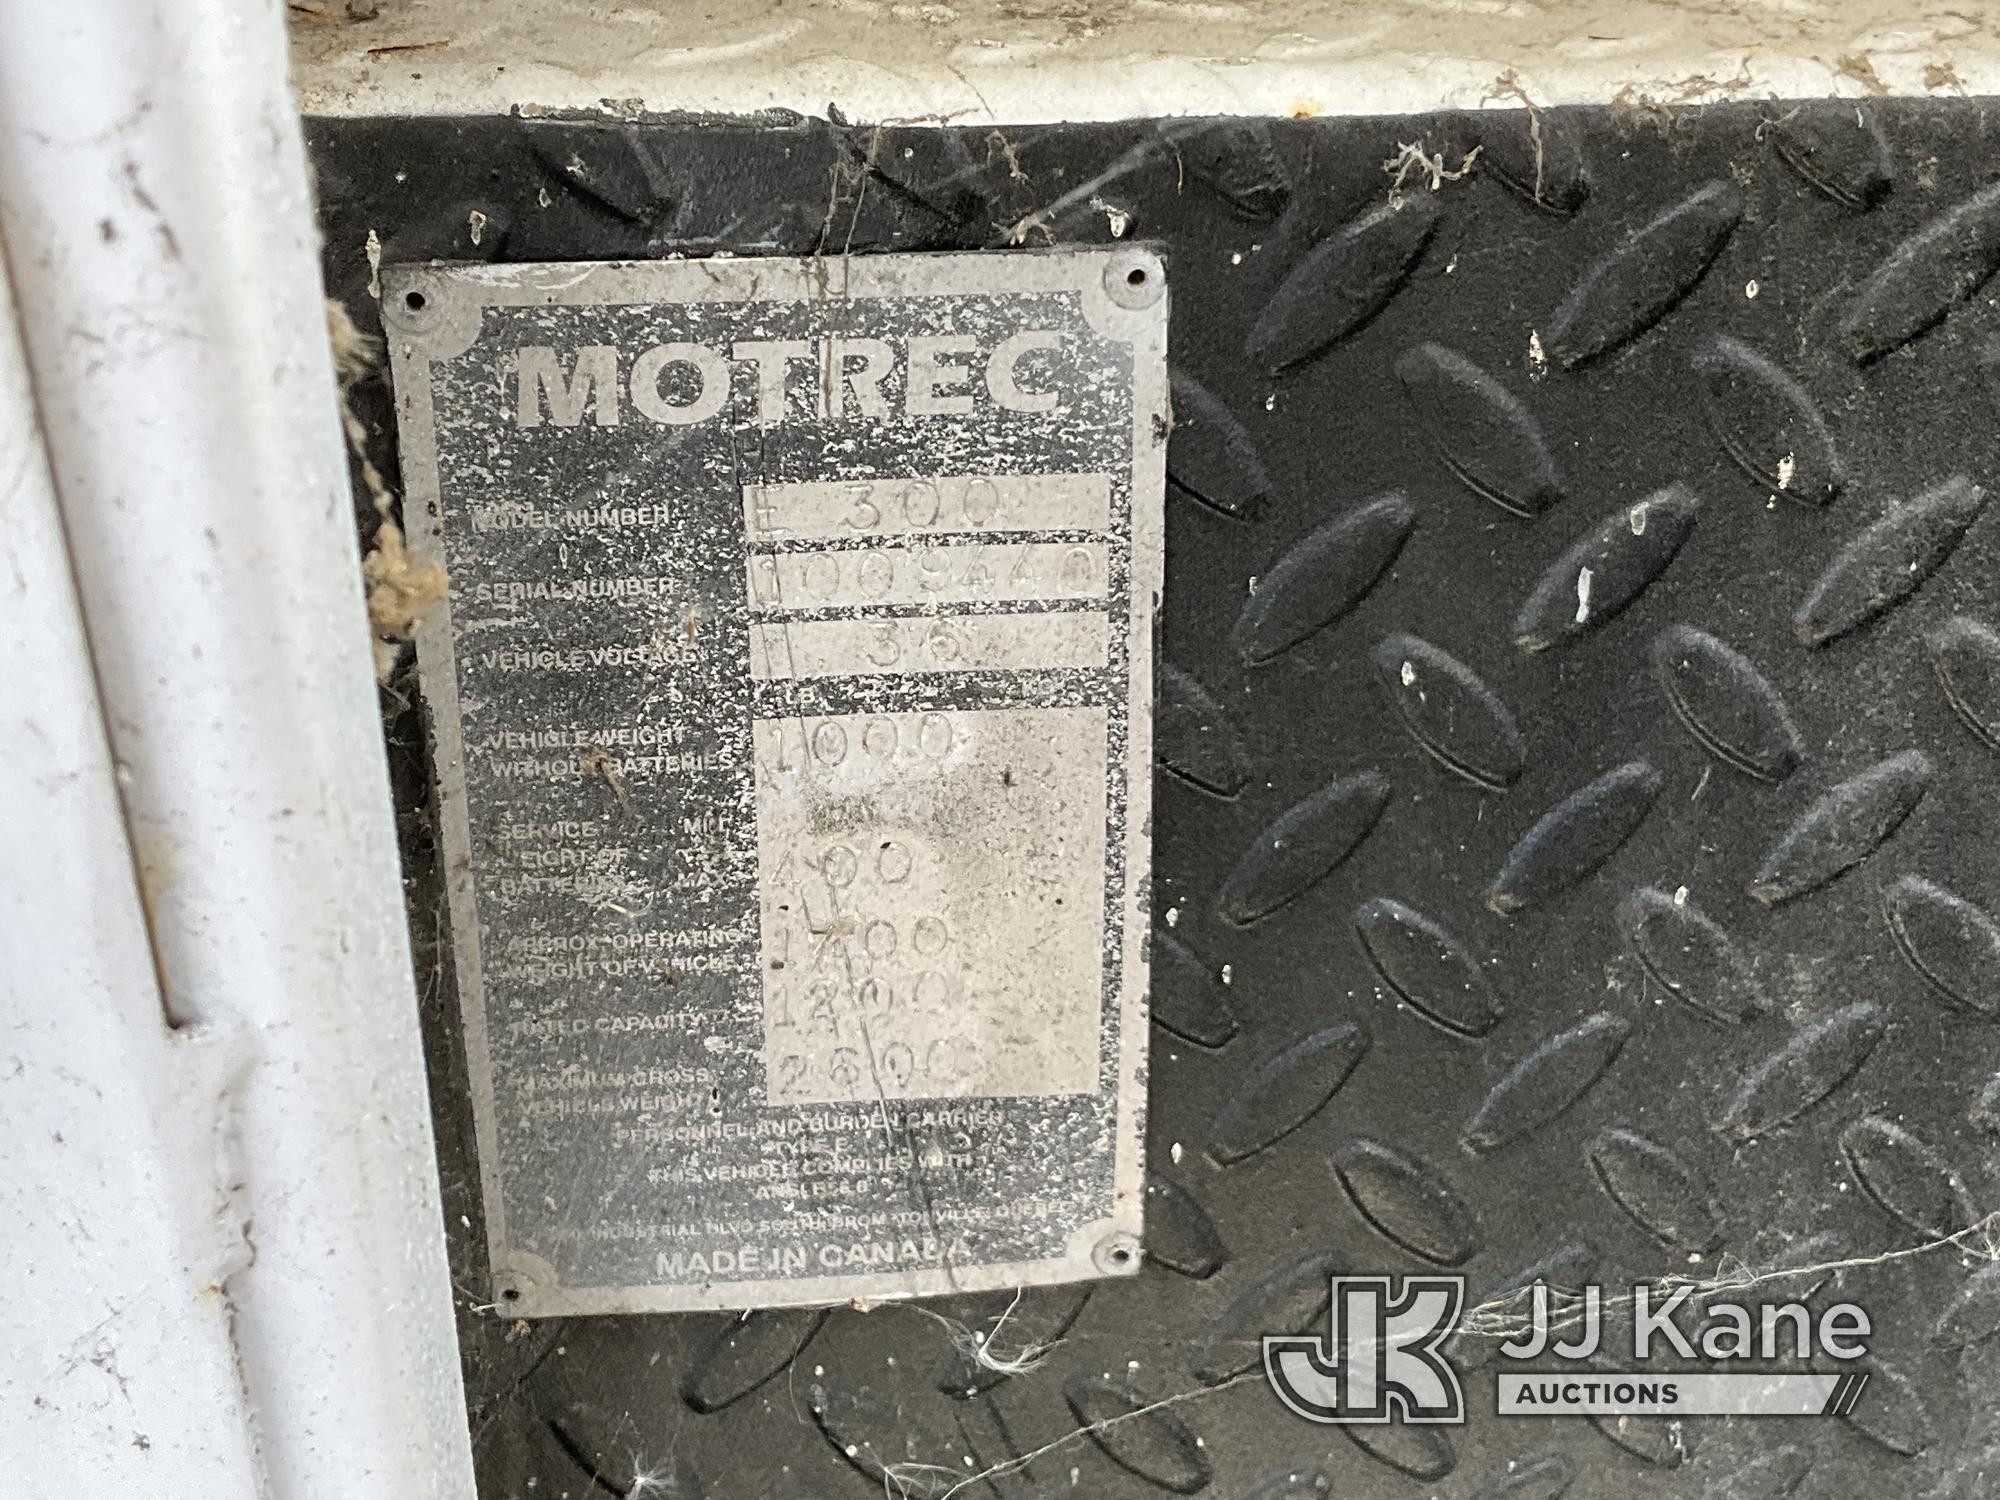 (Dixon, CA) Motrec E300 Not Running. Light Rust Damage. Bill of Sale Only